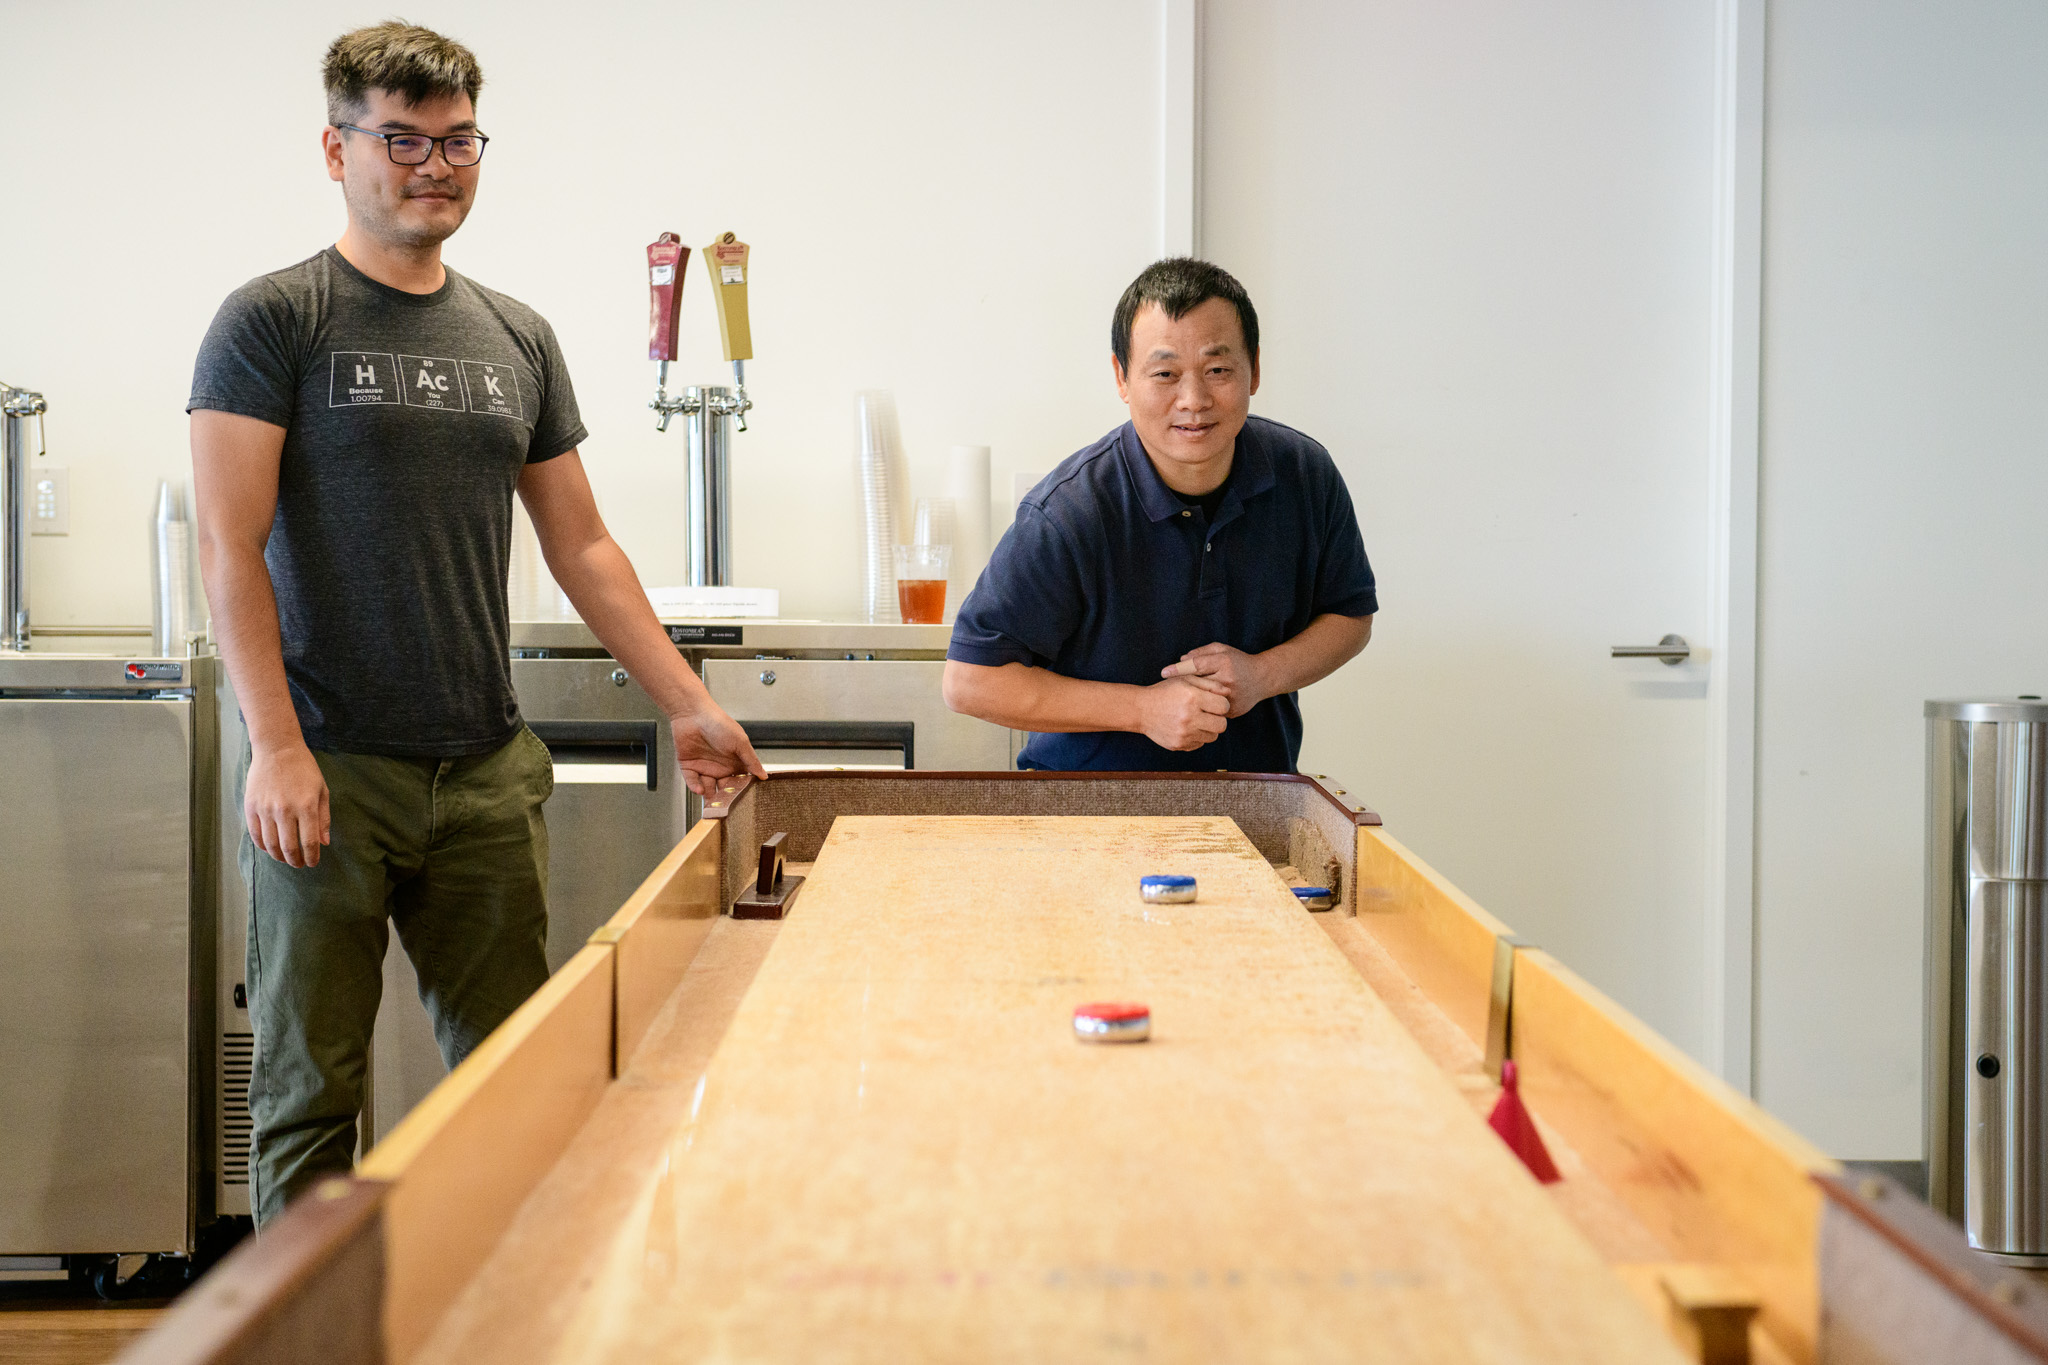 Two CarGurus employees play shuffleboard